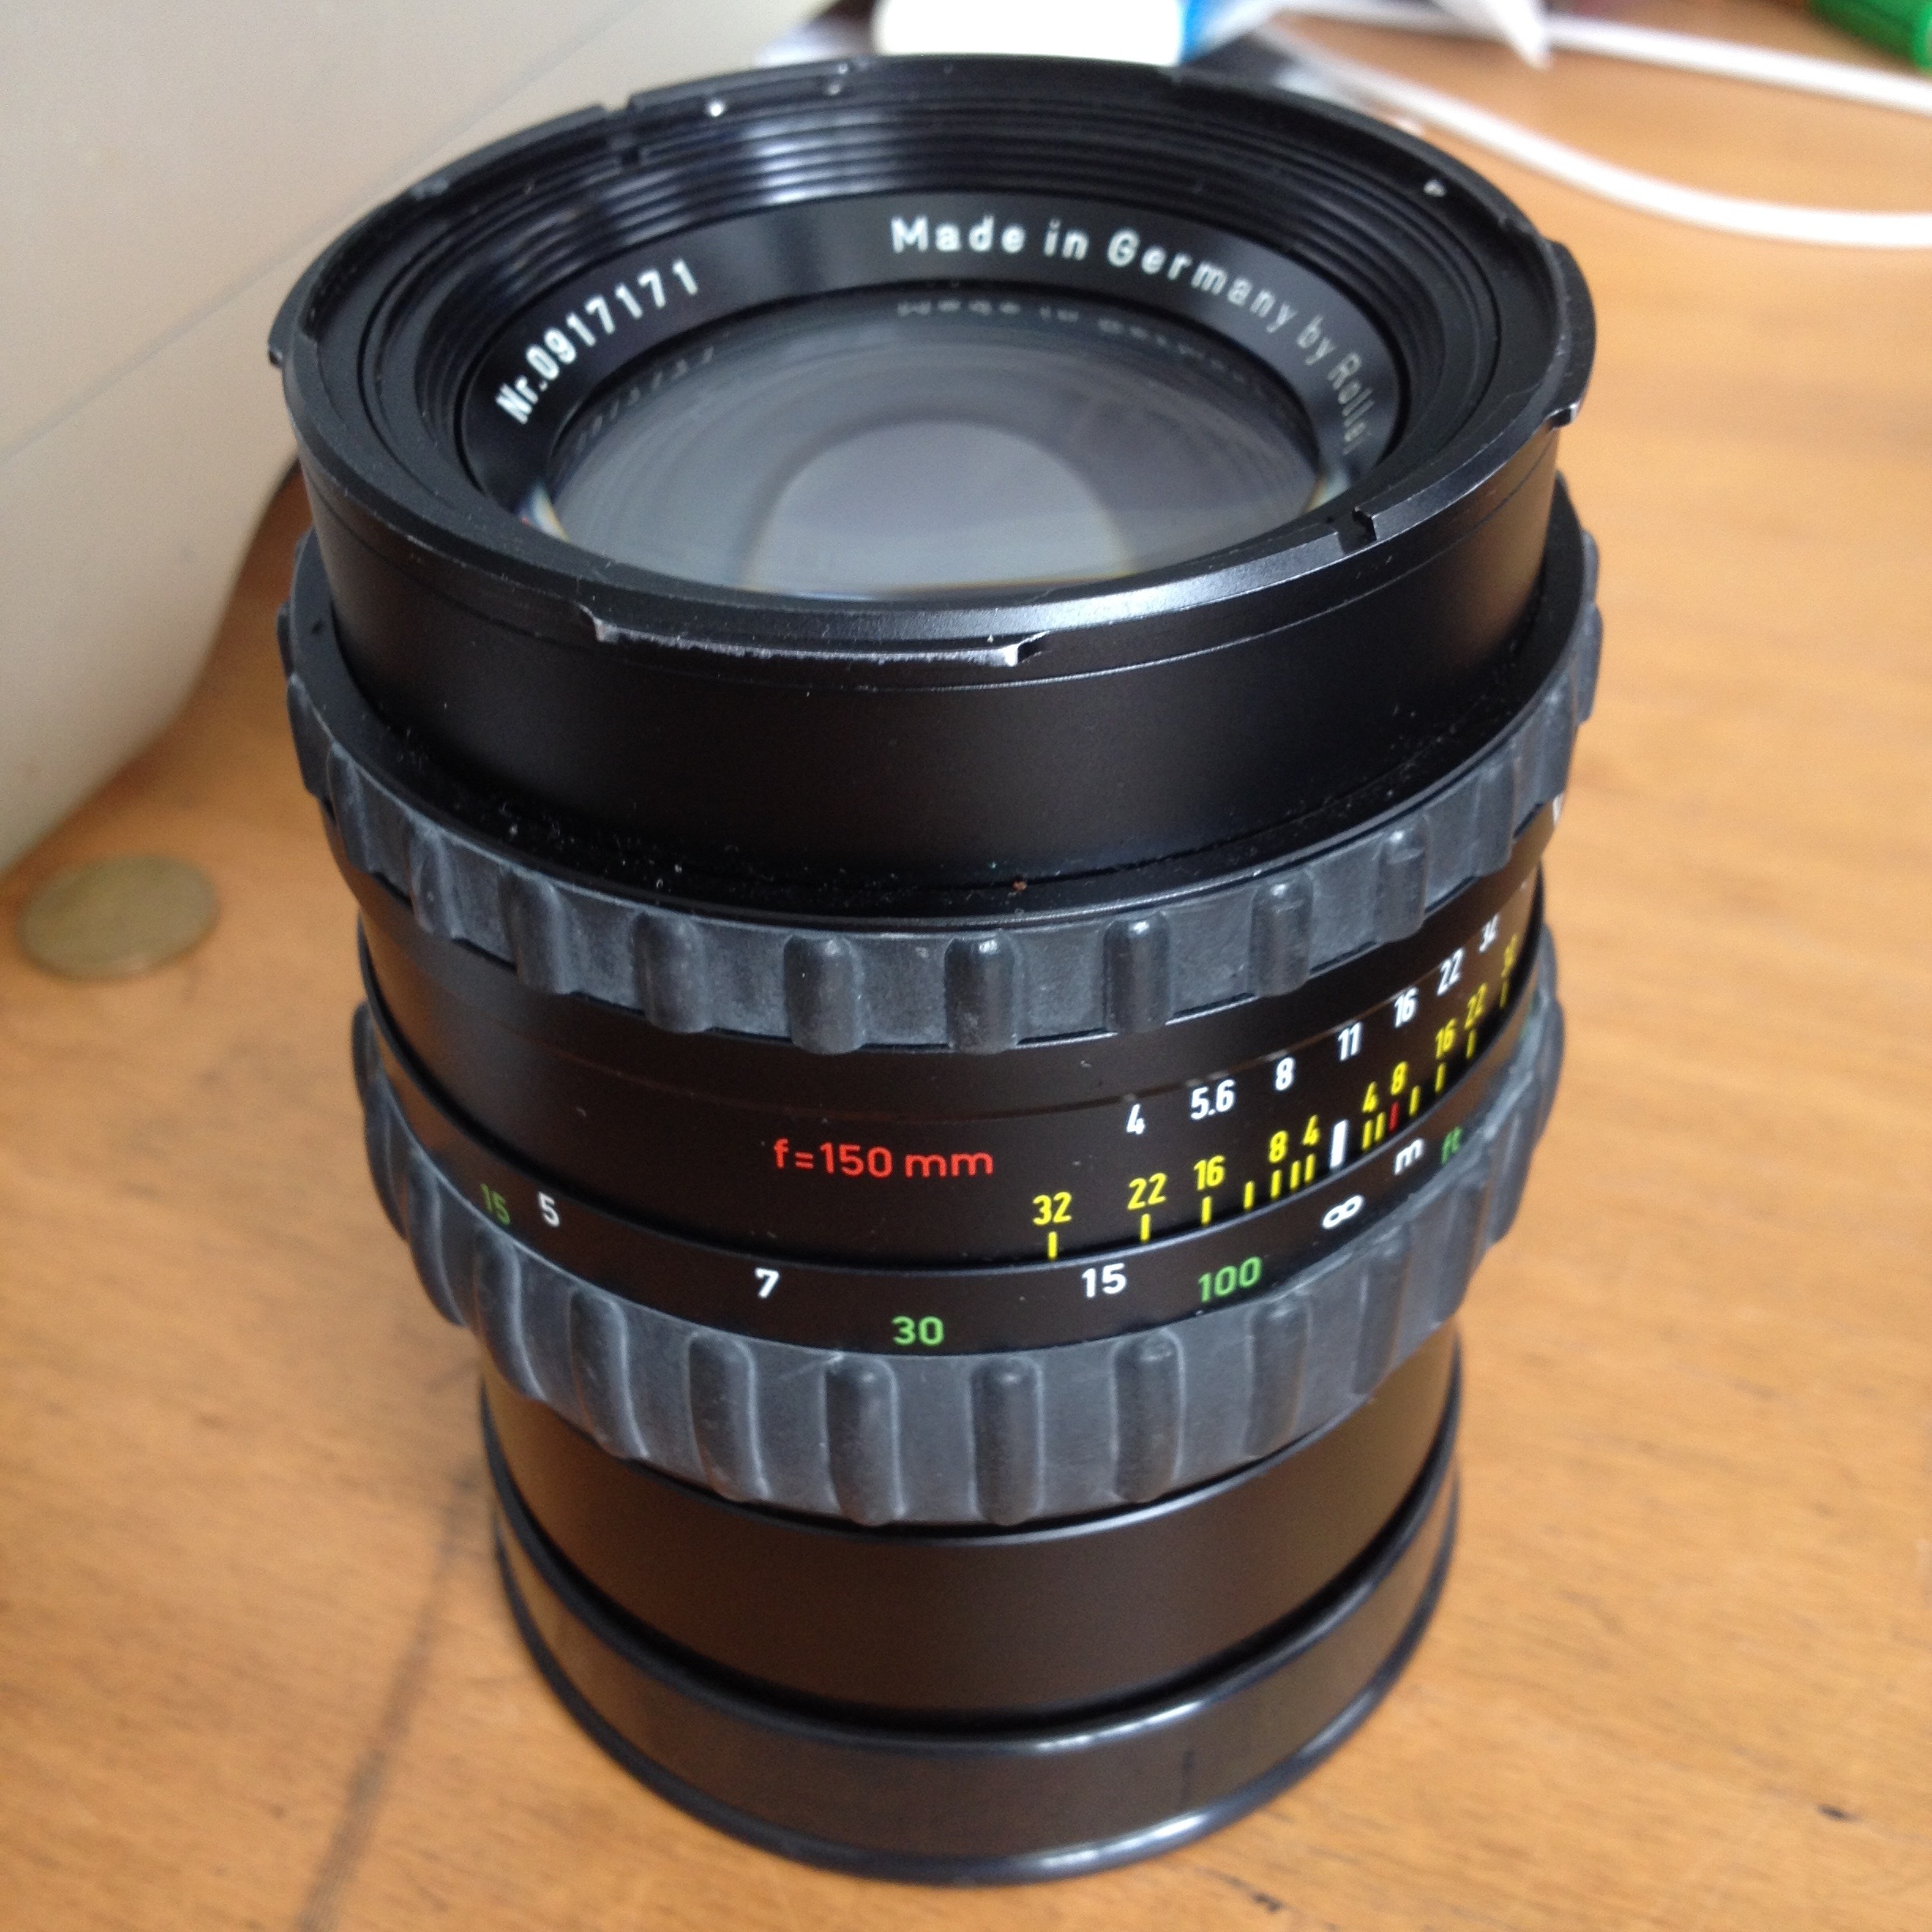 Carl Zeiss HFT Sonnar 150mm f4 lens